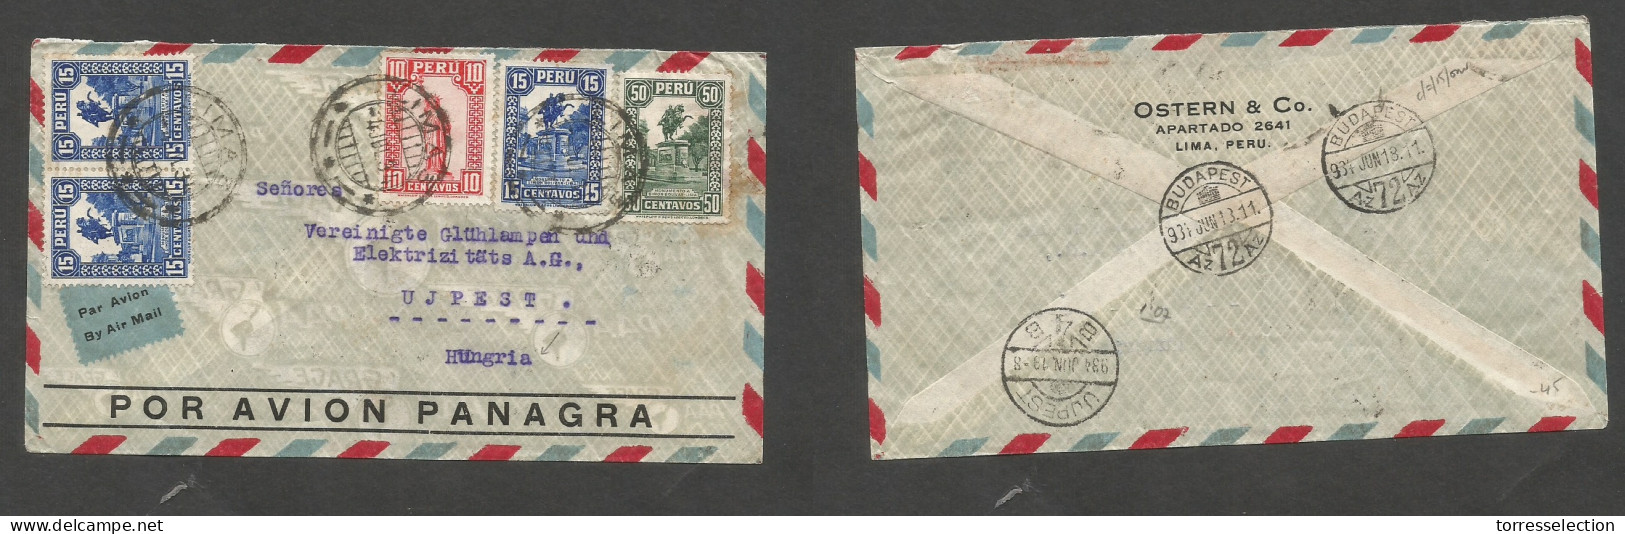 PERU. 1934 (4 June) Lima - Hungary, Ujpest (13 June) Air Multifkd Env, At 1,05 Ps Rate. VF + Air Label. - Perú